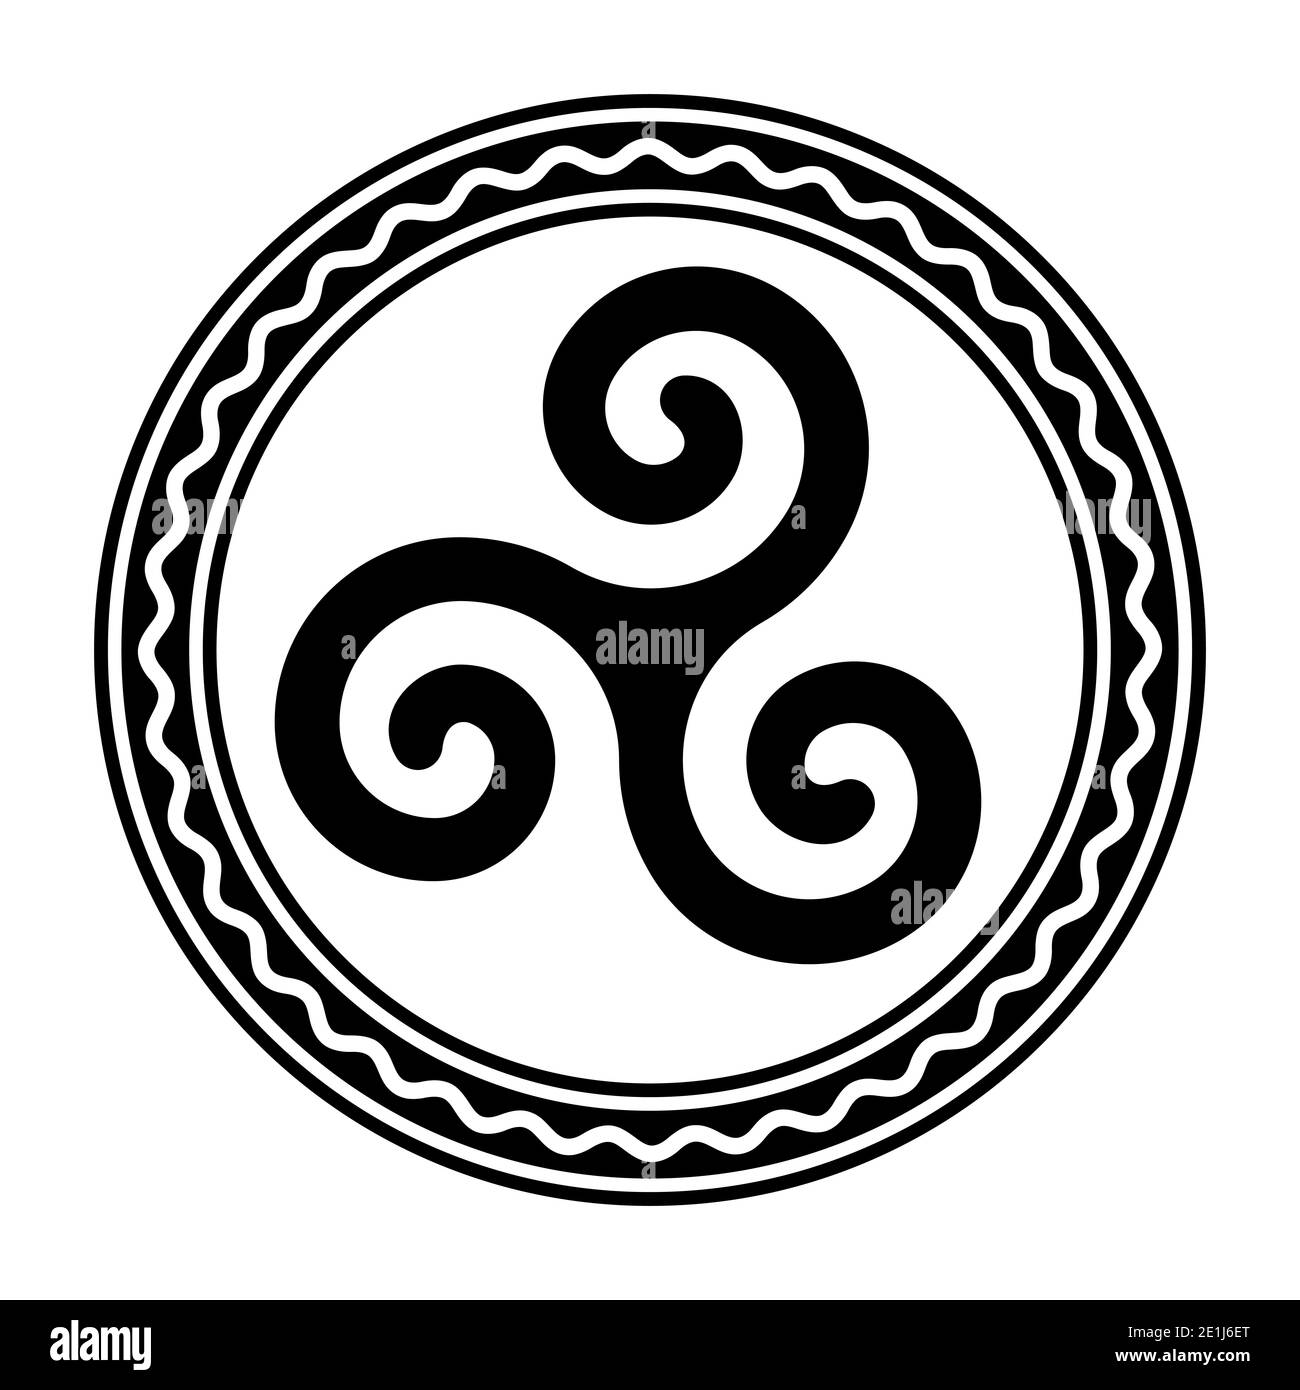 Triskele à l'intérieur du cadre circulaire avec une ligne ondulée blanche. Triskelion, ancien symbole et motif composé d'une triple spirale, montrant la symétrie rotationnelle. Banque D'Images